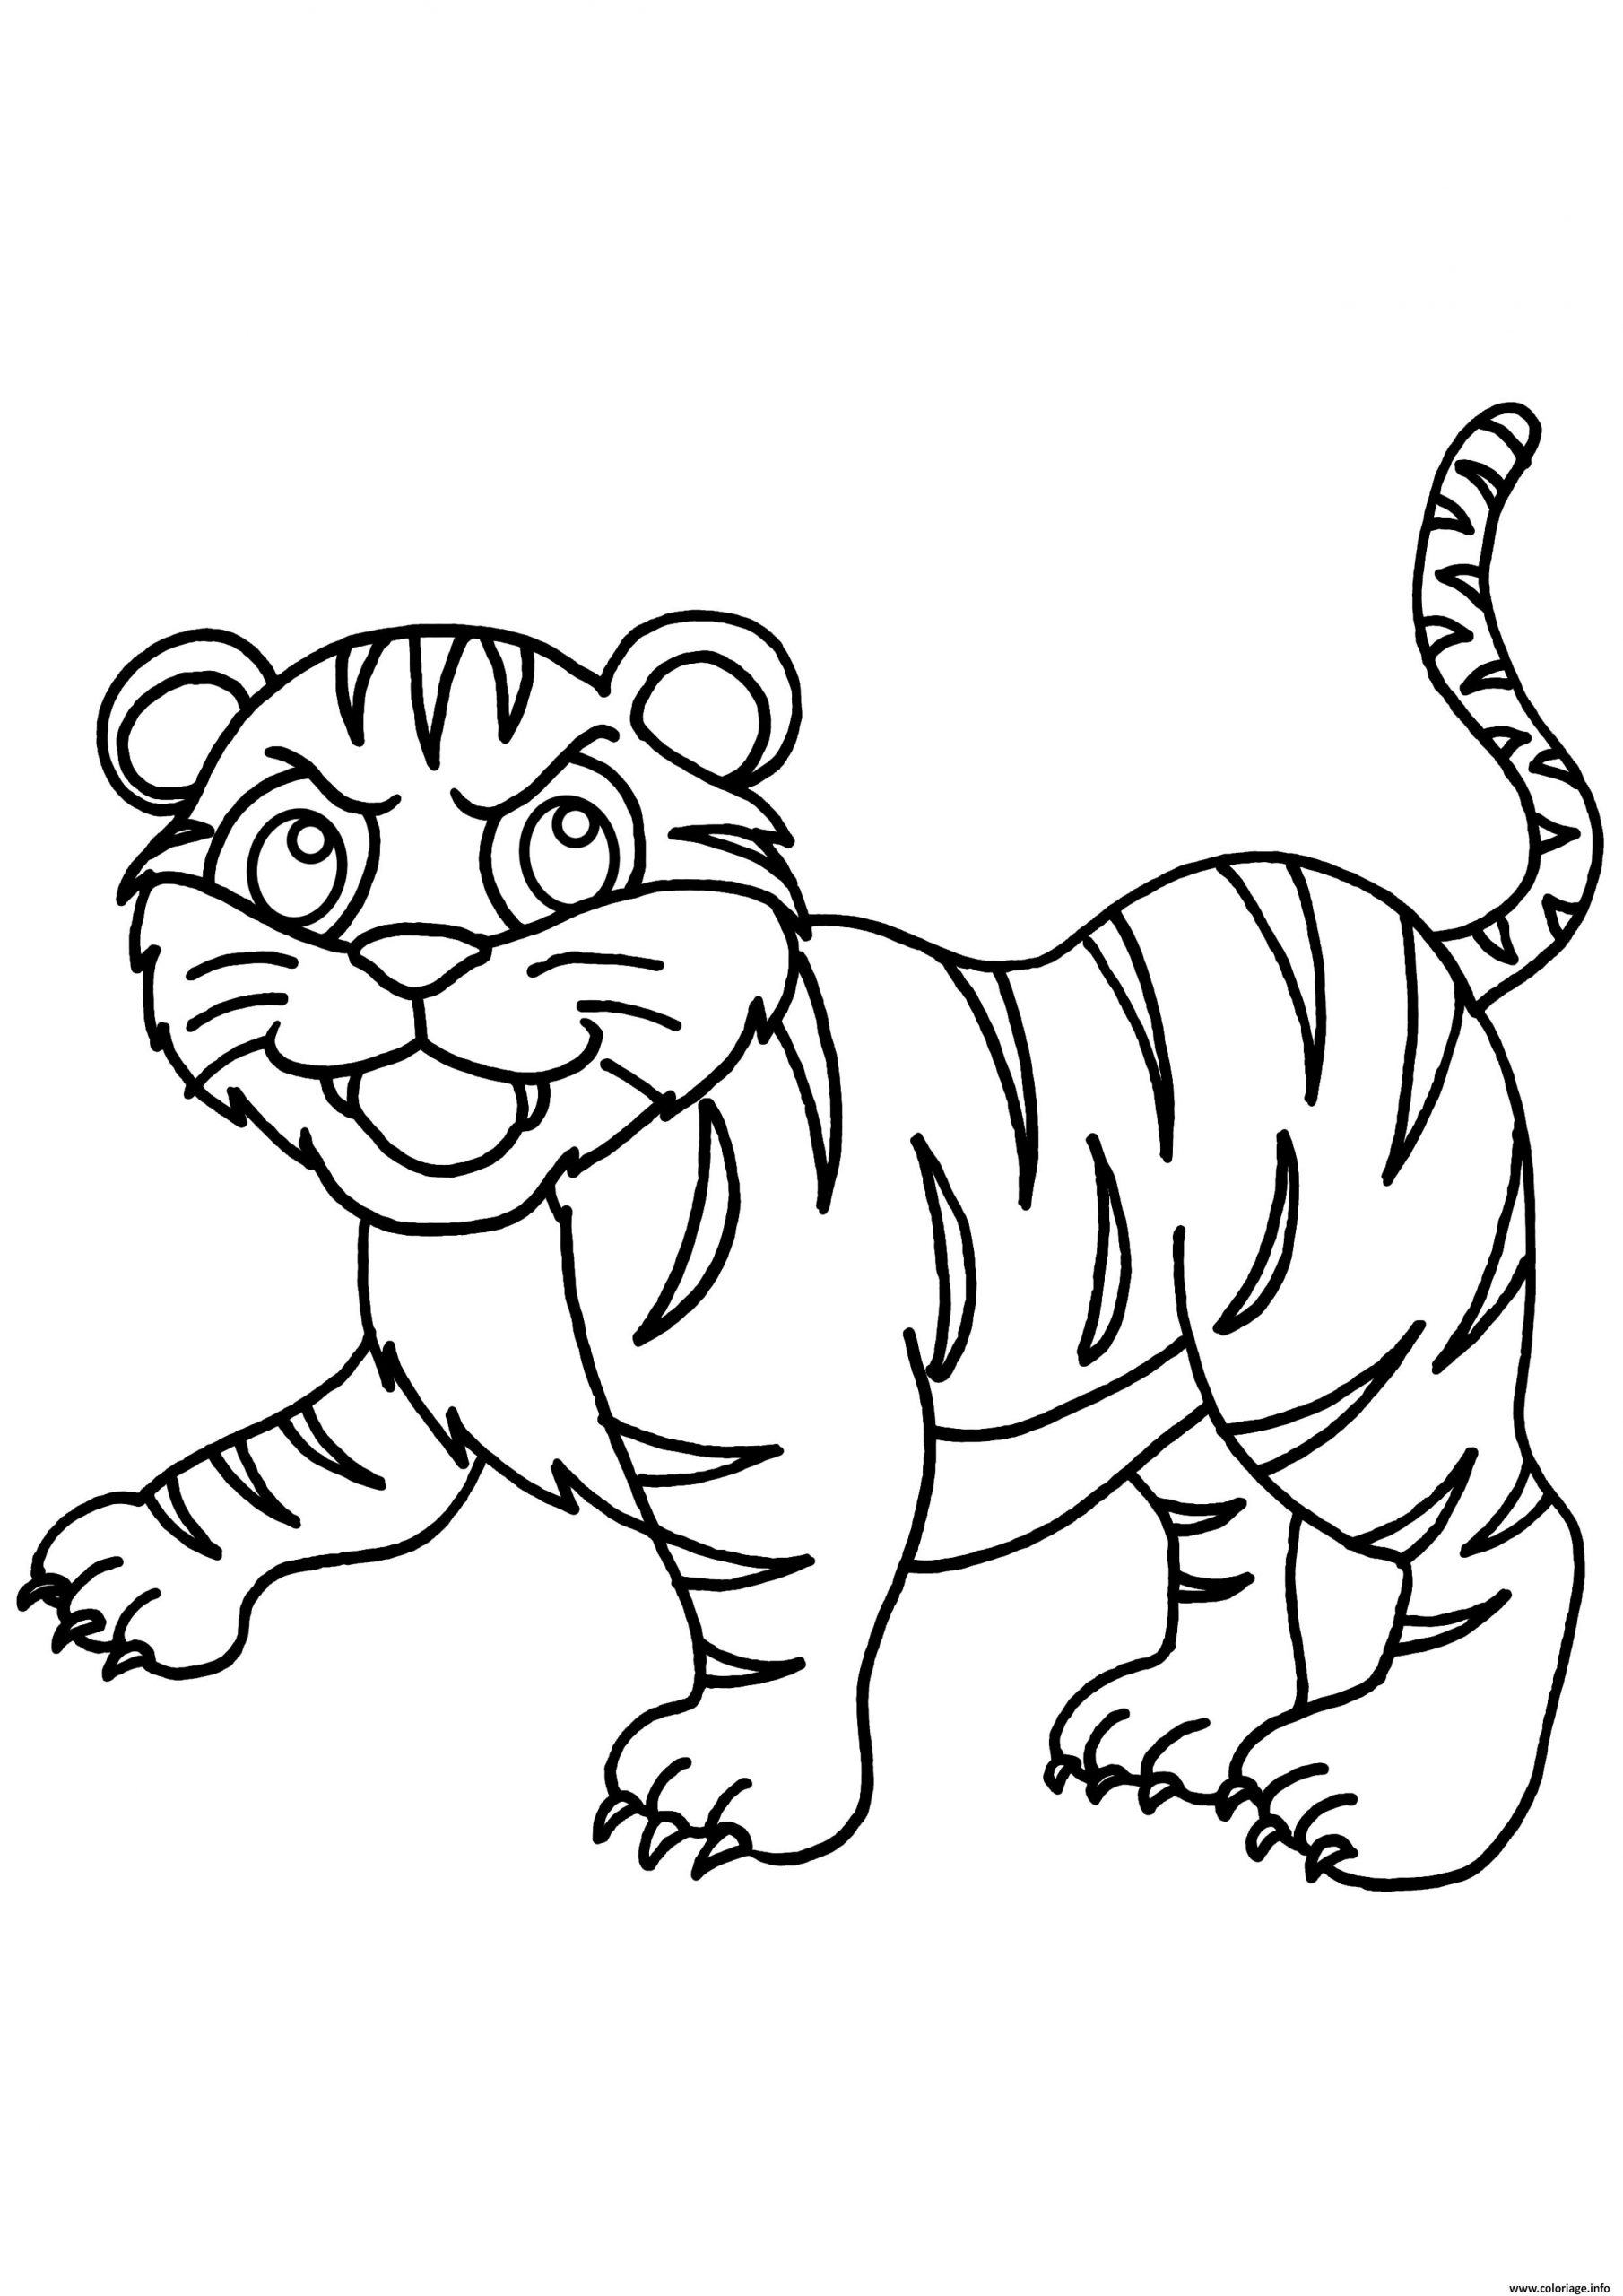 Coloriage Tigre De La Famille Panthera Tigris Dessin à Coloriage Bébé Tigre